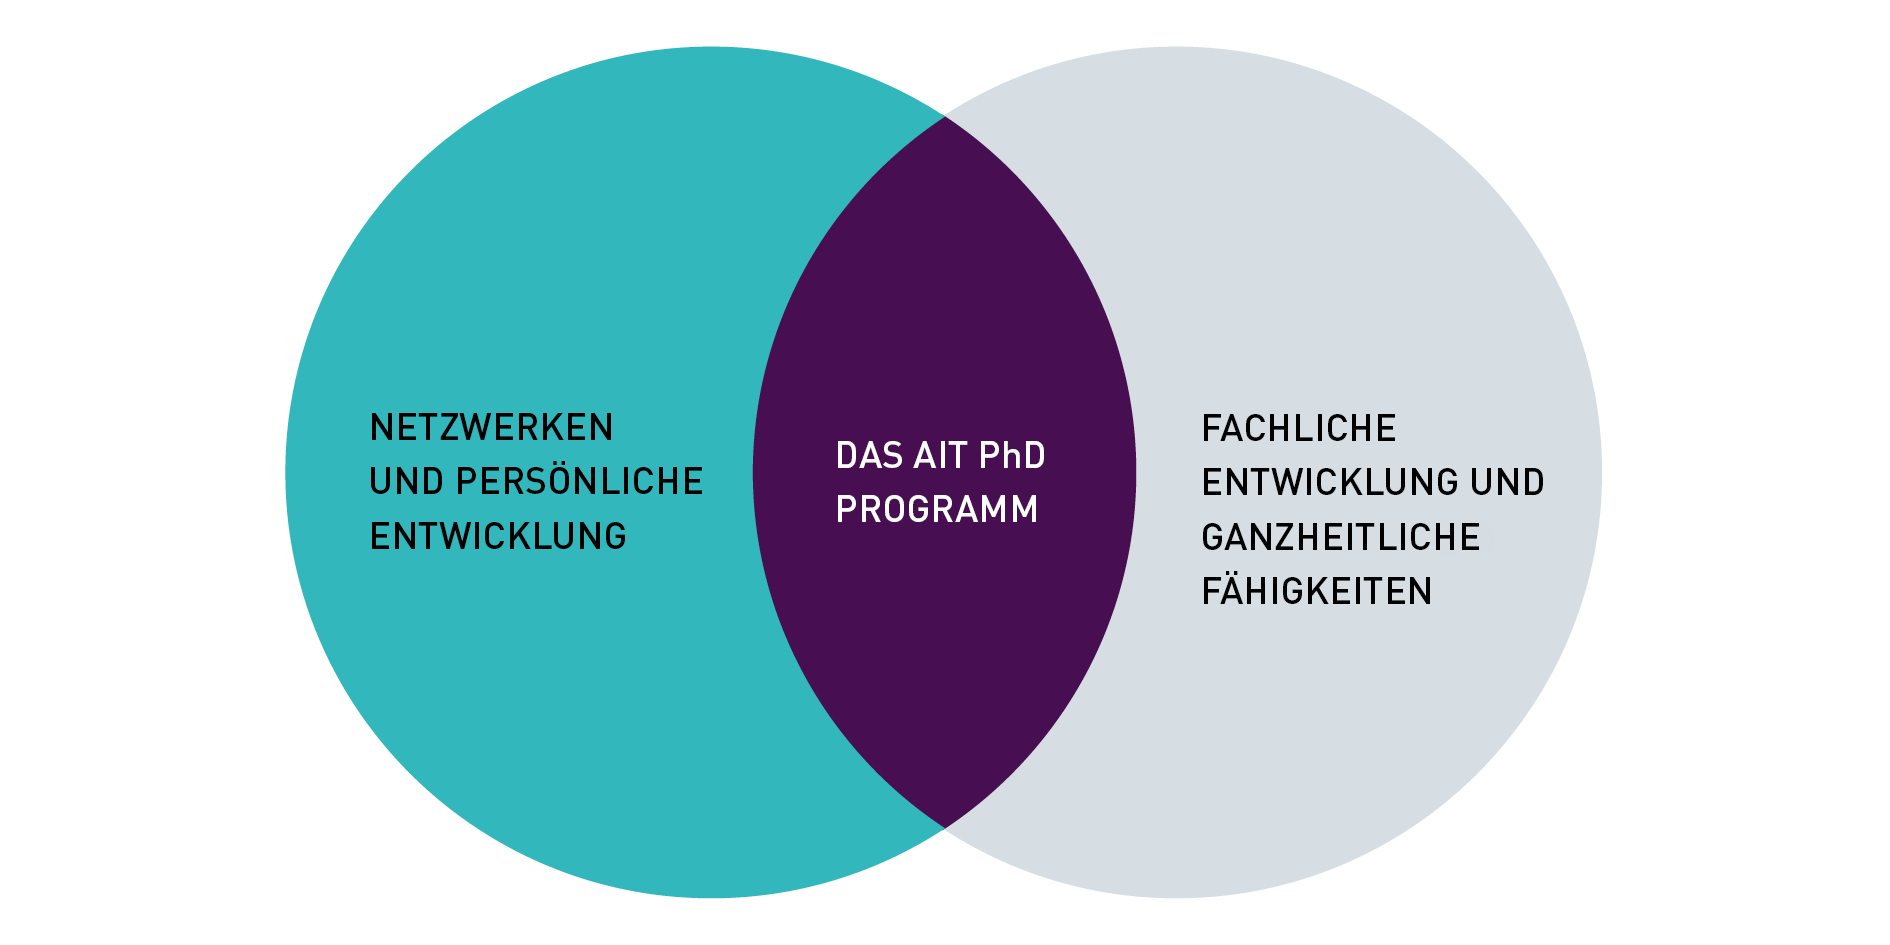 Eine Infografik mit zwei überlappenden Kreisen: links steht netzwerken und persönliche Entwicklung. In der Mitte steht "Das AIT PhD Programm" und rechts steht fachliche Entwicklung und ganzheitliche Fähigkeiten.